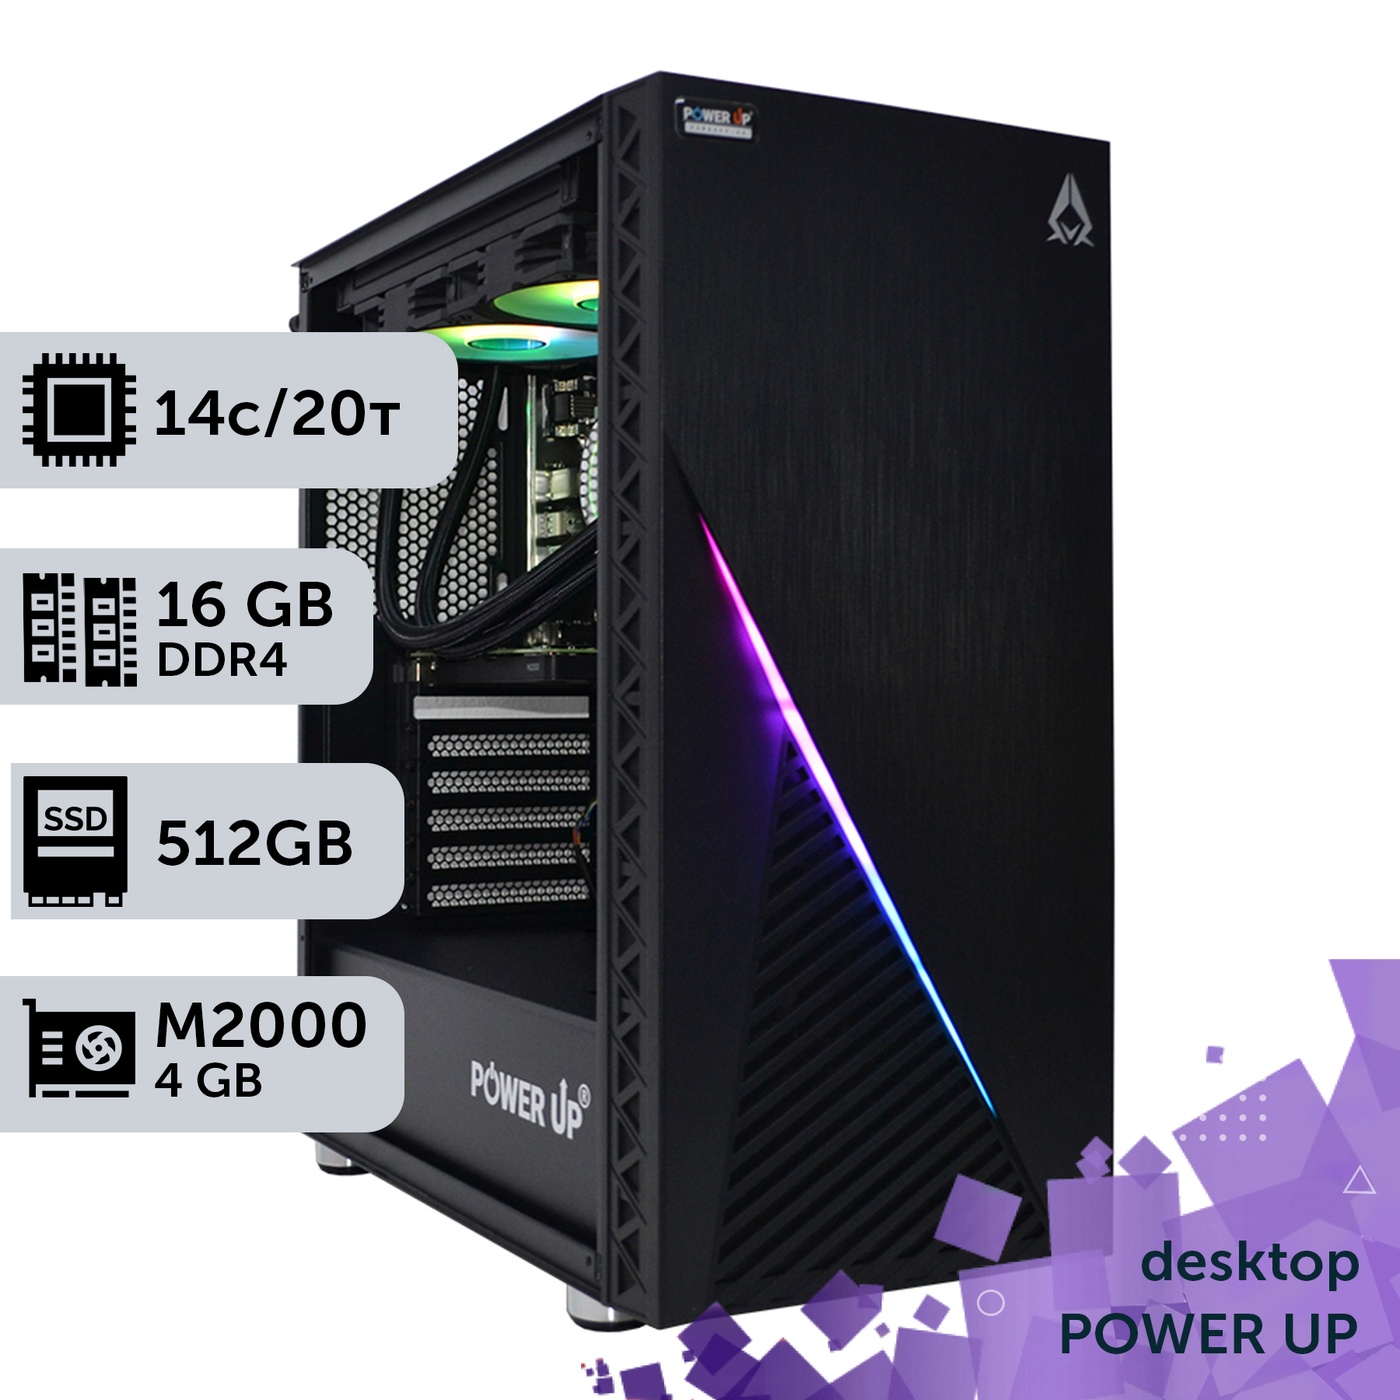 Рабочая станция PowerUp Desktop #214 Core i5 13600K/16 GB/SSD 512GB/NVIDIA Quadro M2000 4GB